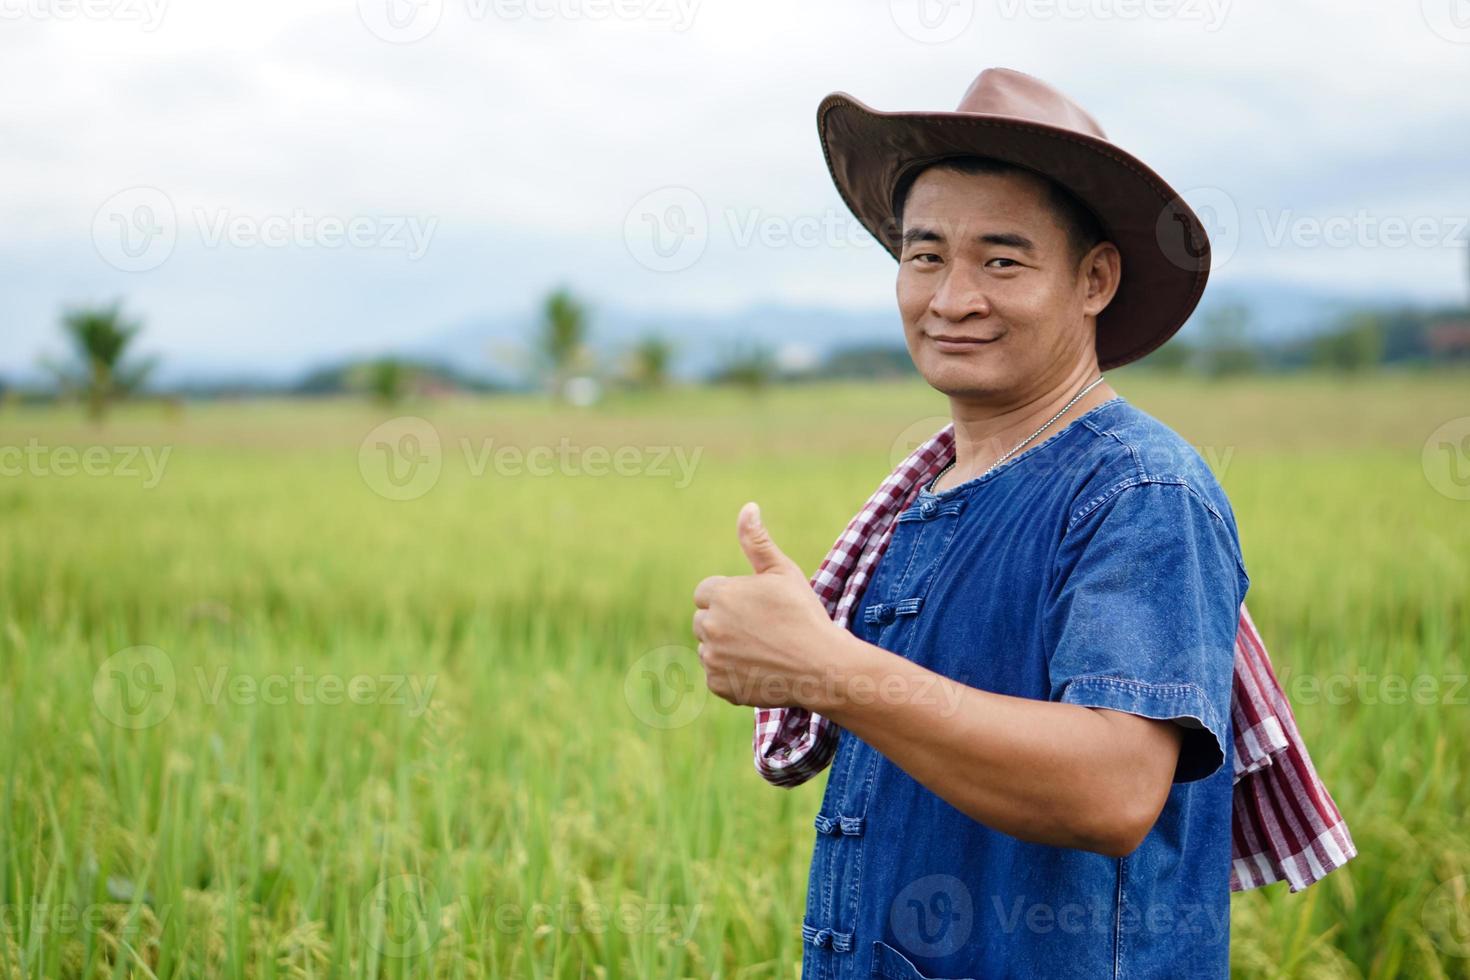 retrato do homem asiático agricultor usa chapéu, camisa azul, polegares para cima, sente-se confiante, fica no campo de arroz. conceito, ocupação agrícola. agricultores tailandeses cultivam arroz orgânico. copie o espaço para adicionar texto. foto